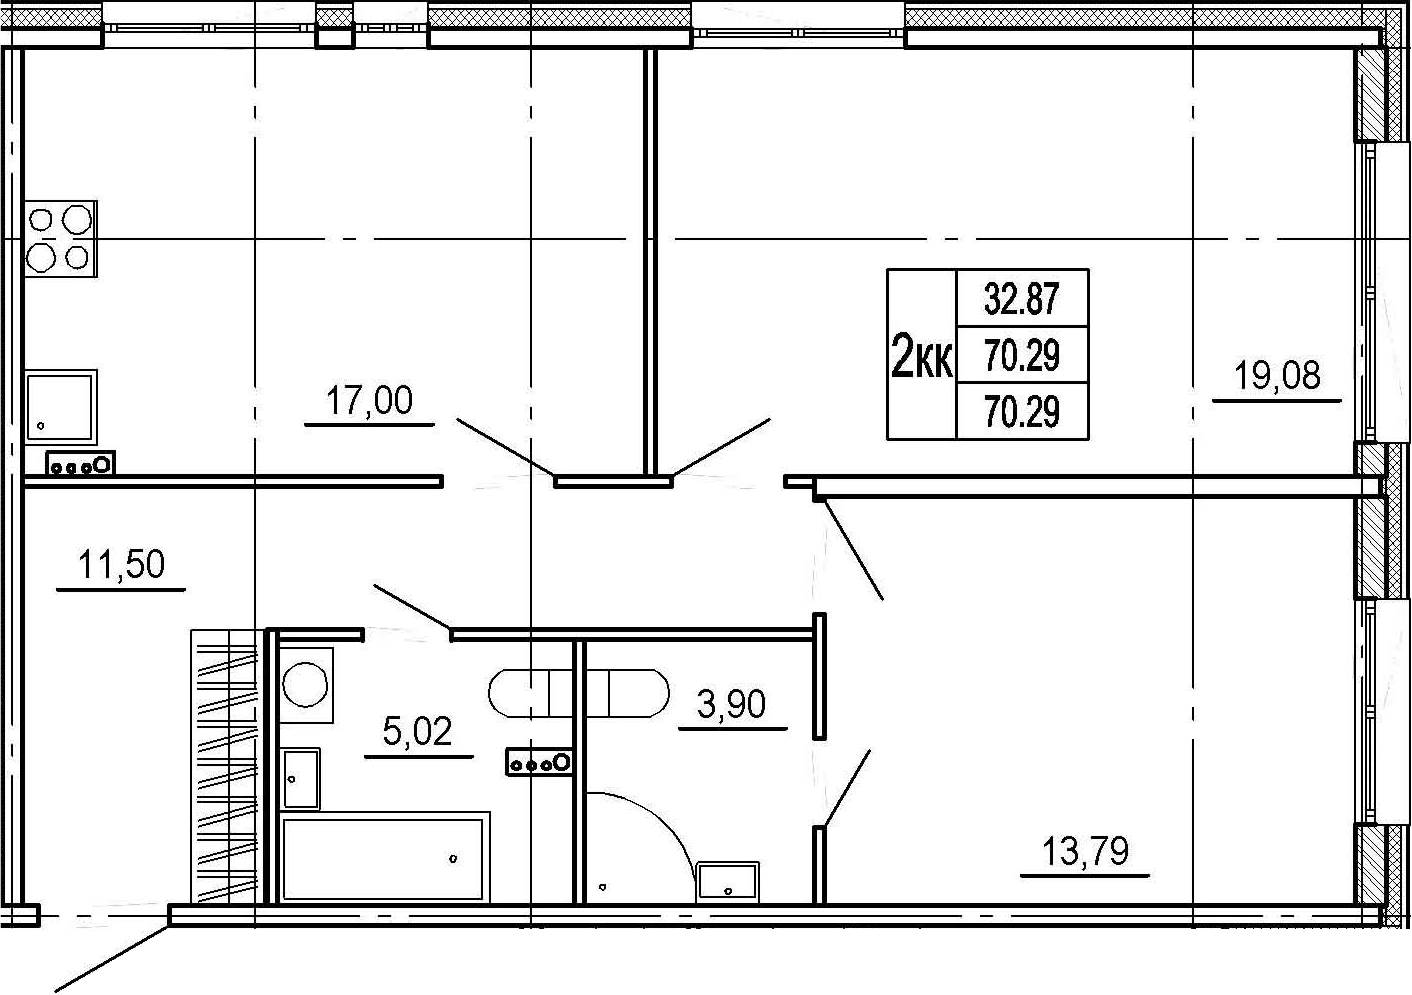 2-комнатная, 70.29 м²– 2